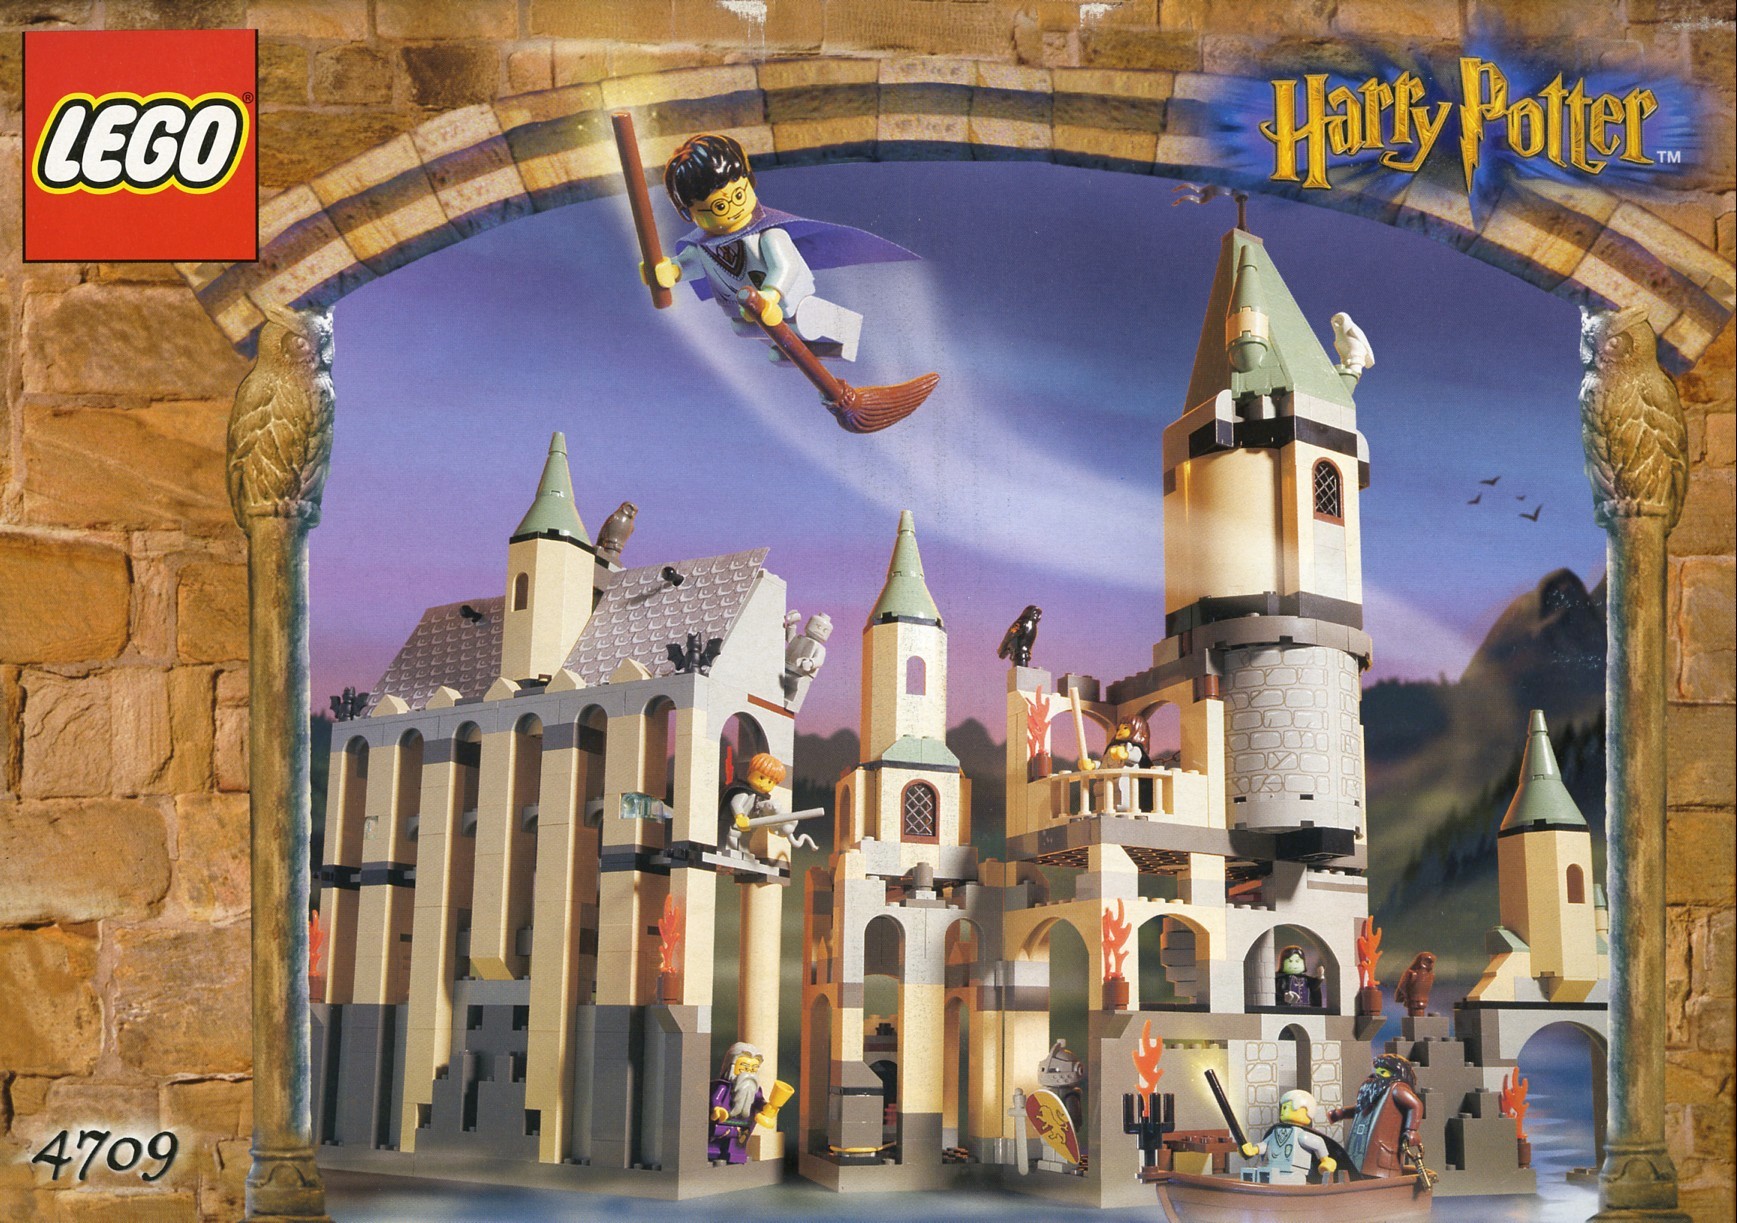 Lego 4709 Hogwarts Castle - Lego Harry Potter set for sale best price